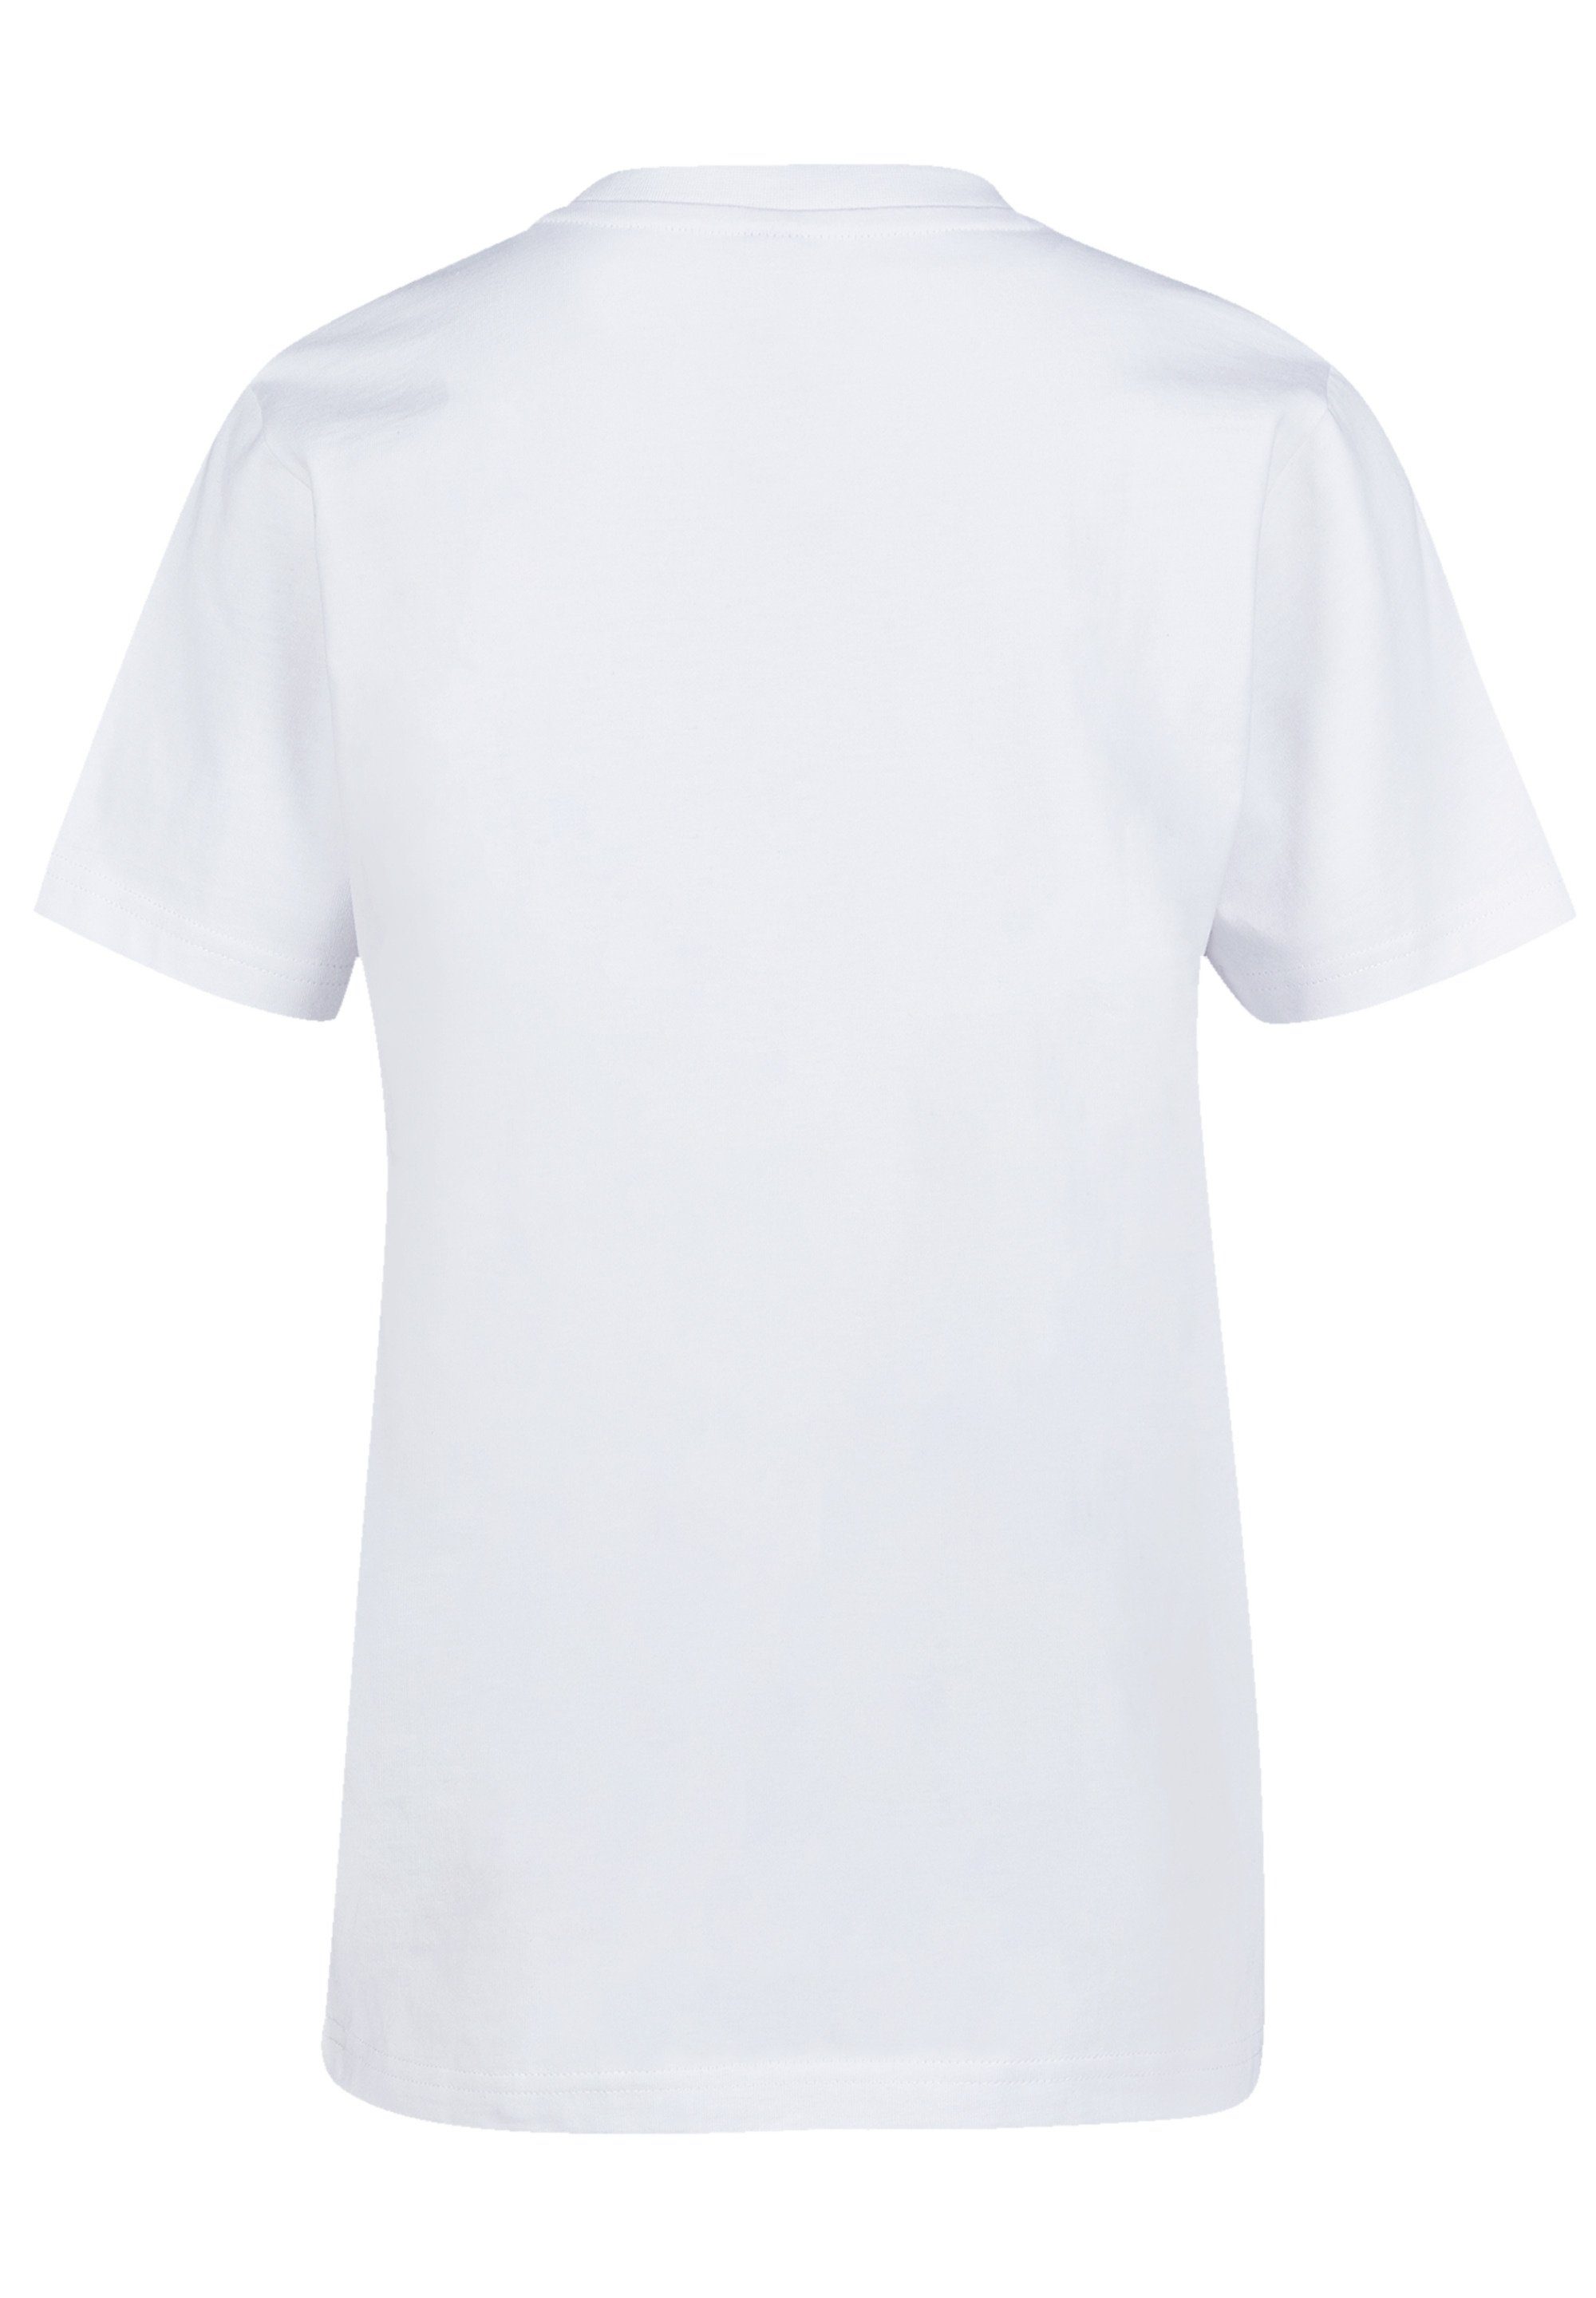 F4NT4STIC T-Shirt Japan Kranich weiß Print